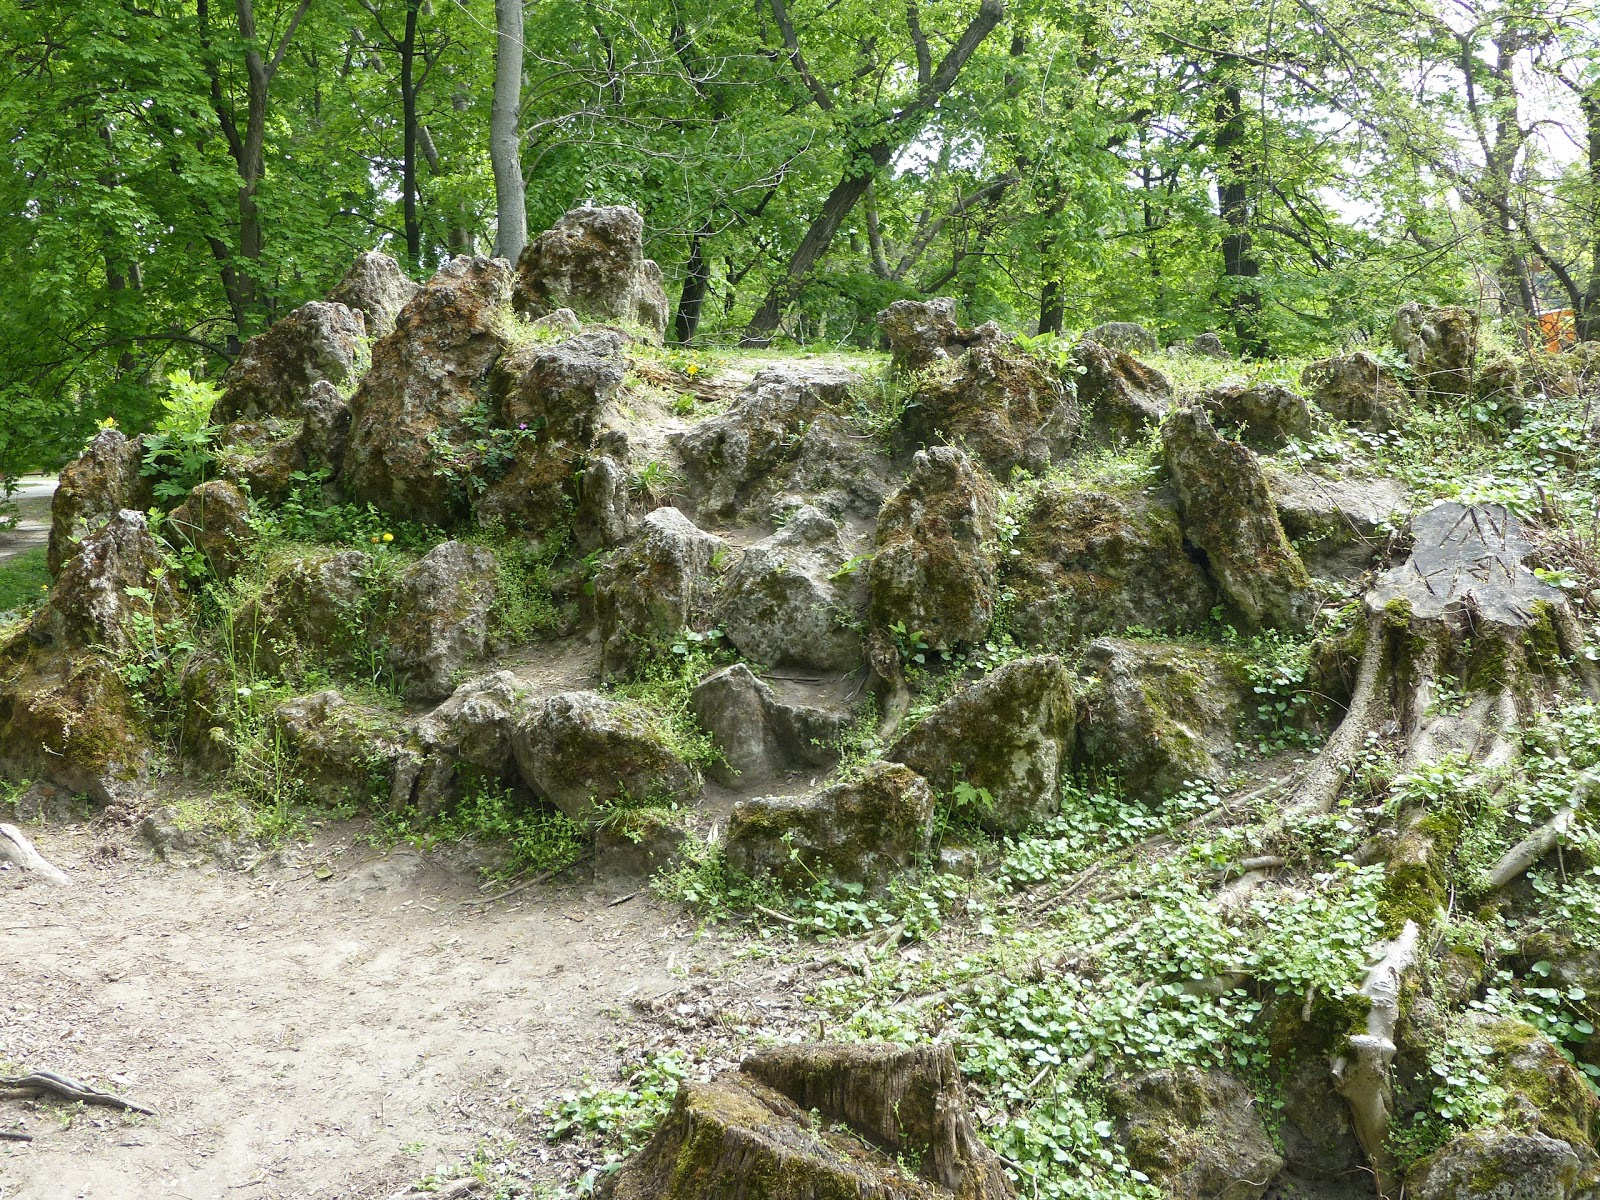 Tata, Angol Park, műbarlang (grotta), SzG3